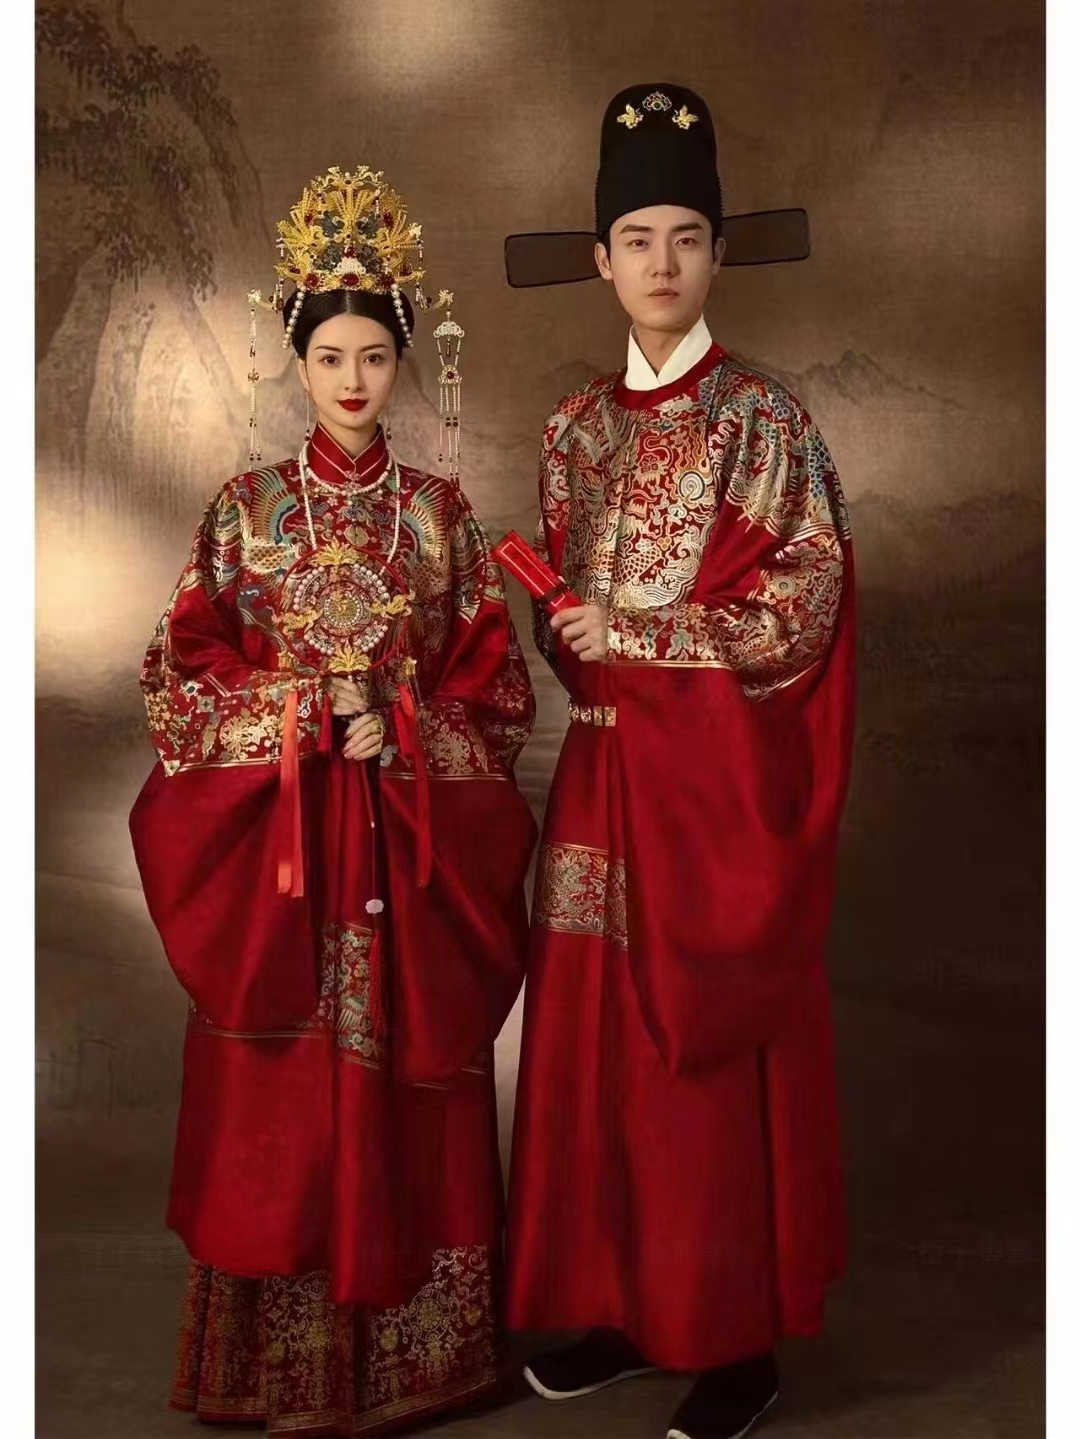 出租明制婚服男女汉服情侣婚服中式古代婚礼婚纱照拍摄高端款